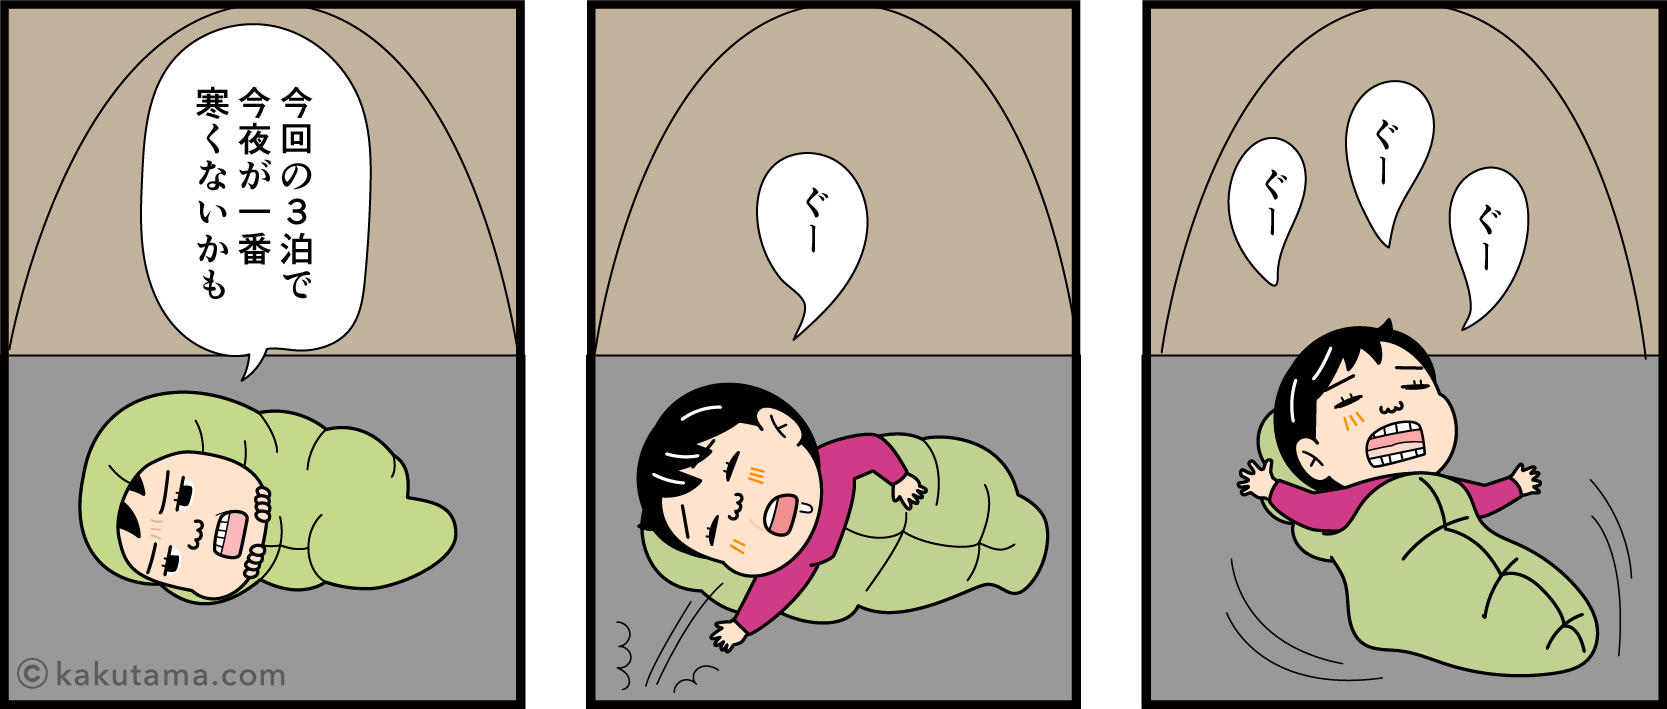 テントで寝る登山者の漫画